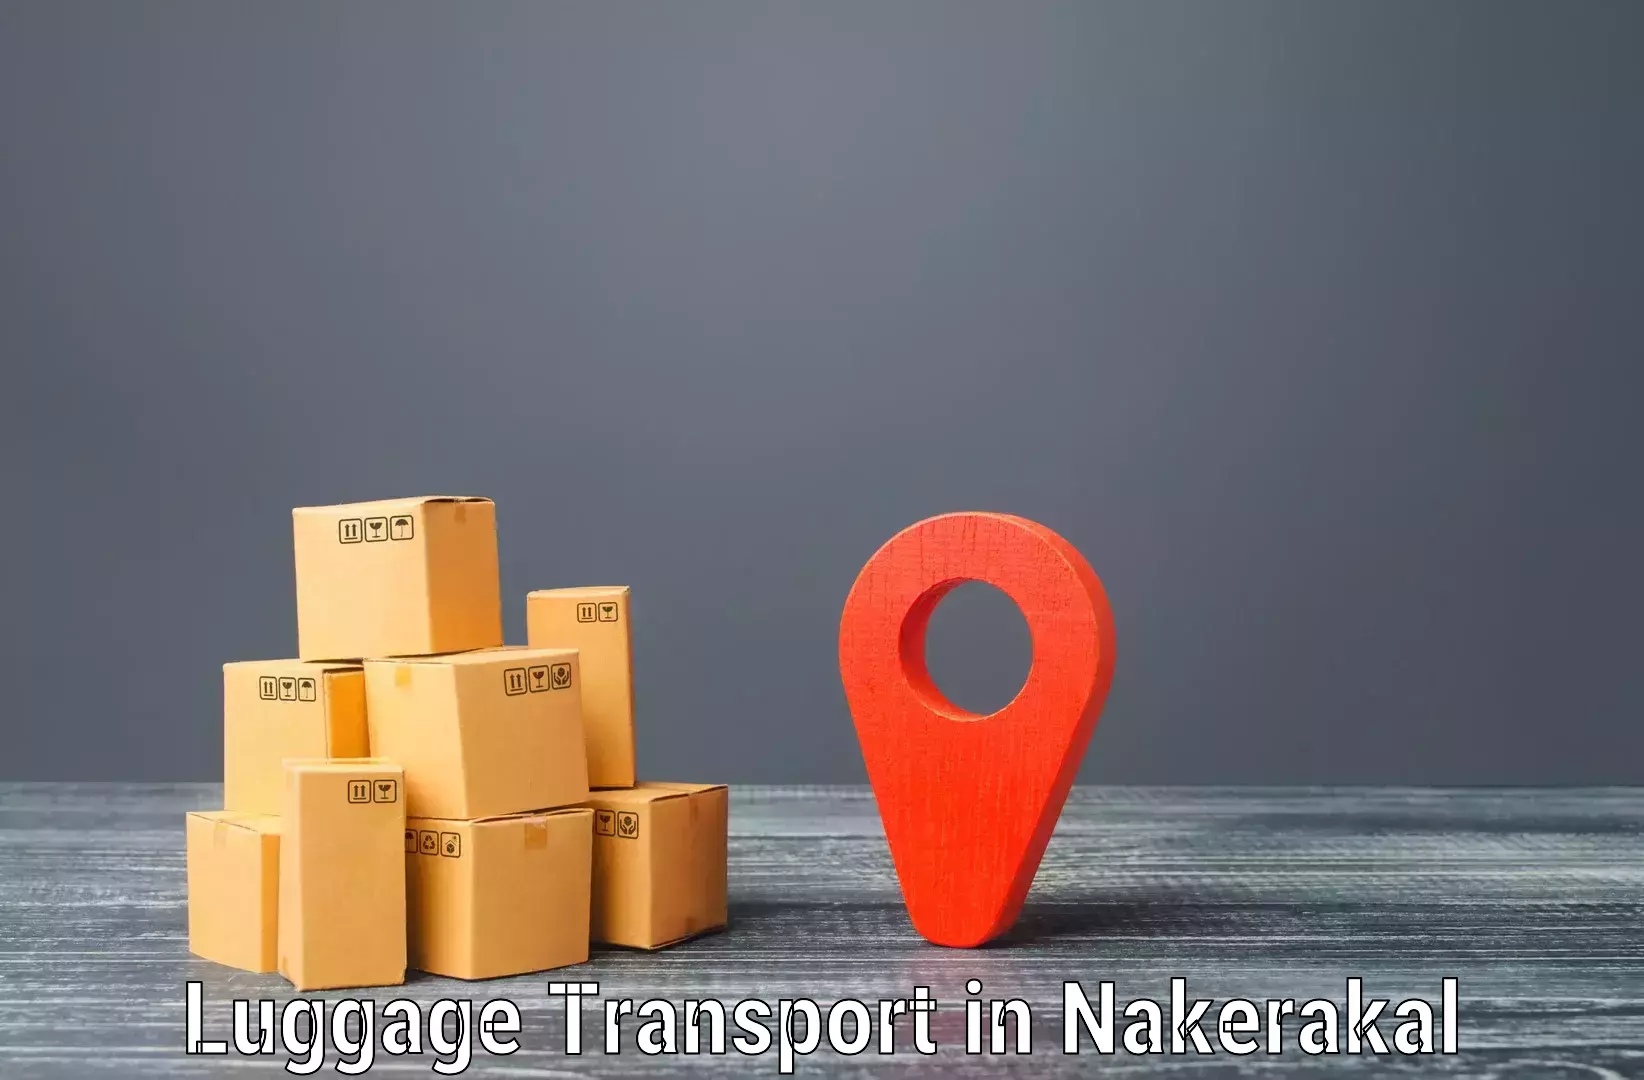 Personalized luggage shipping in Nakerakal